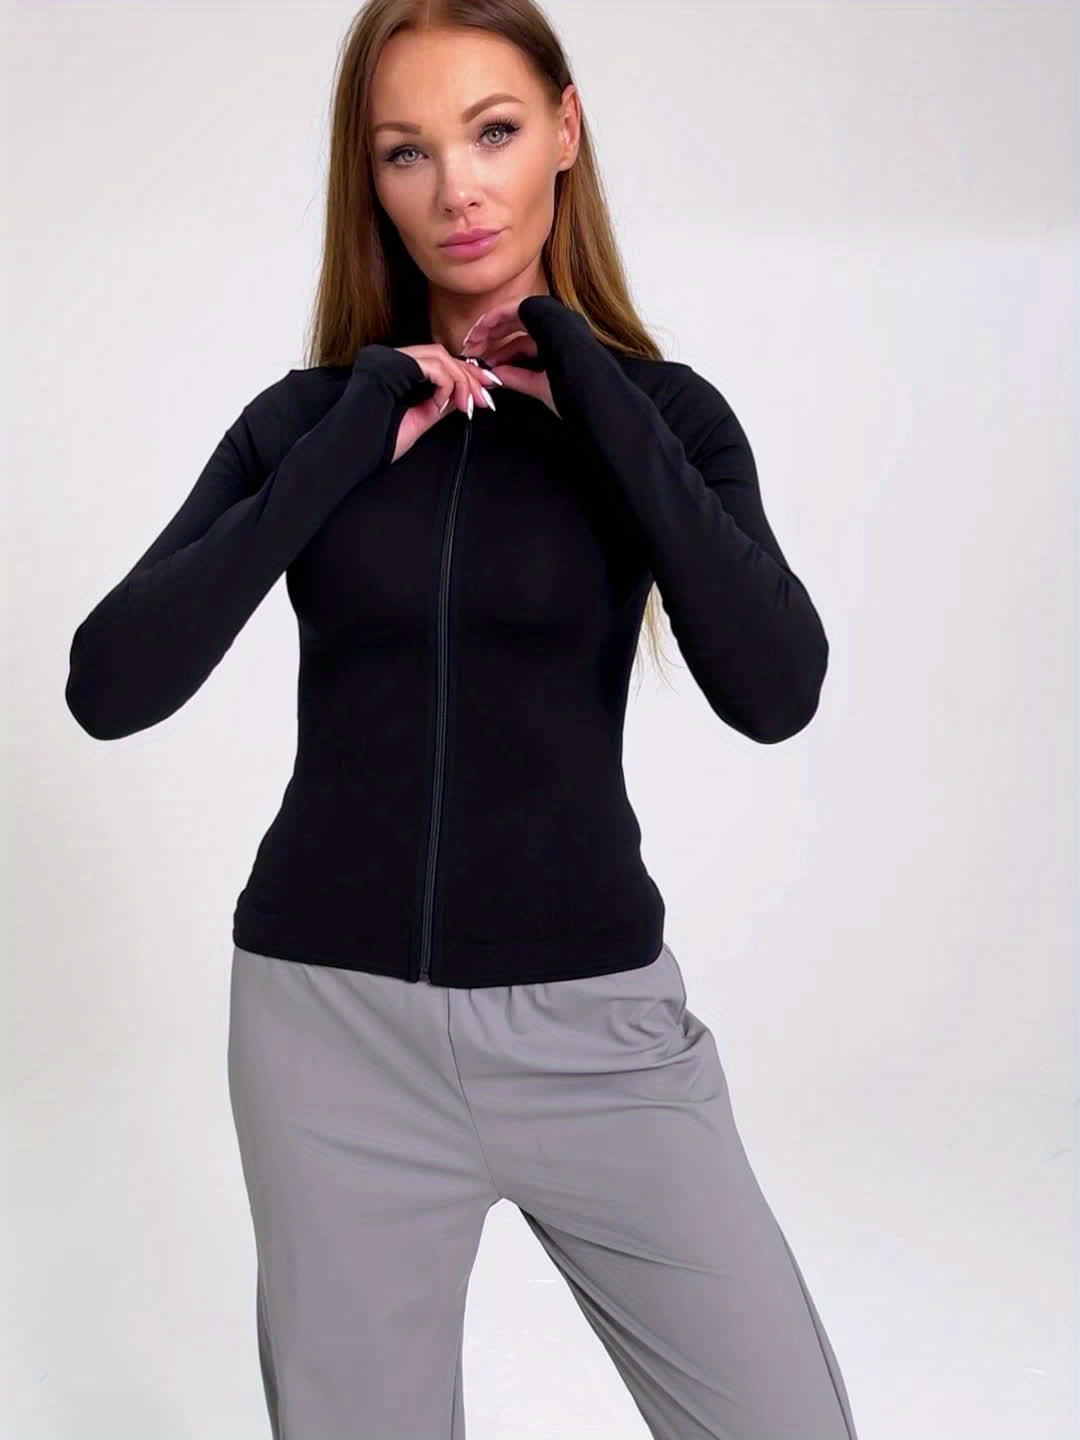 Chaqueta ligera con cremallera completa elástica para mujer, chaqueta  deportiva para correr, yoga, entrenamiento, ajuste delgado, para gimnasio